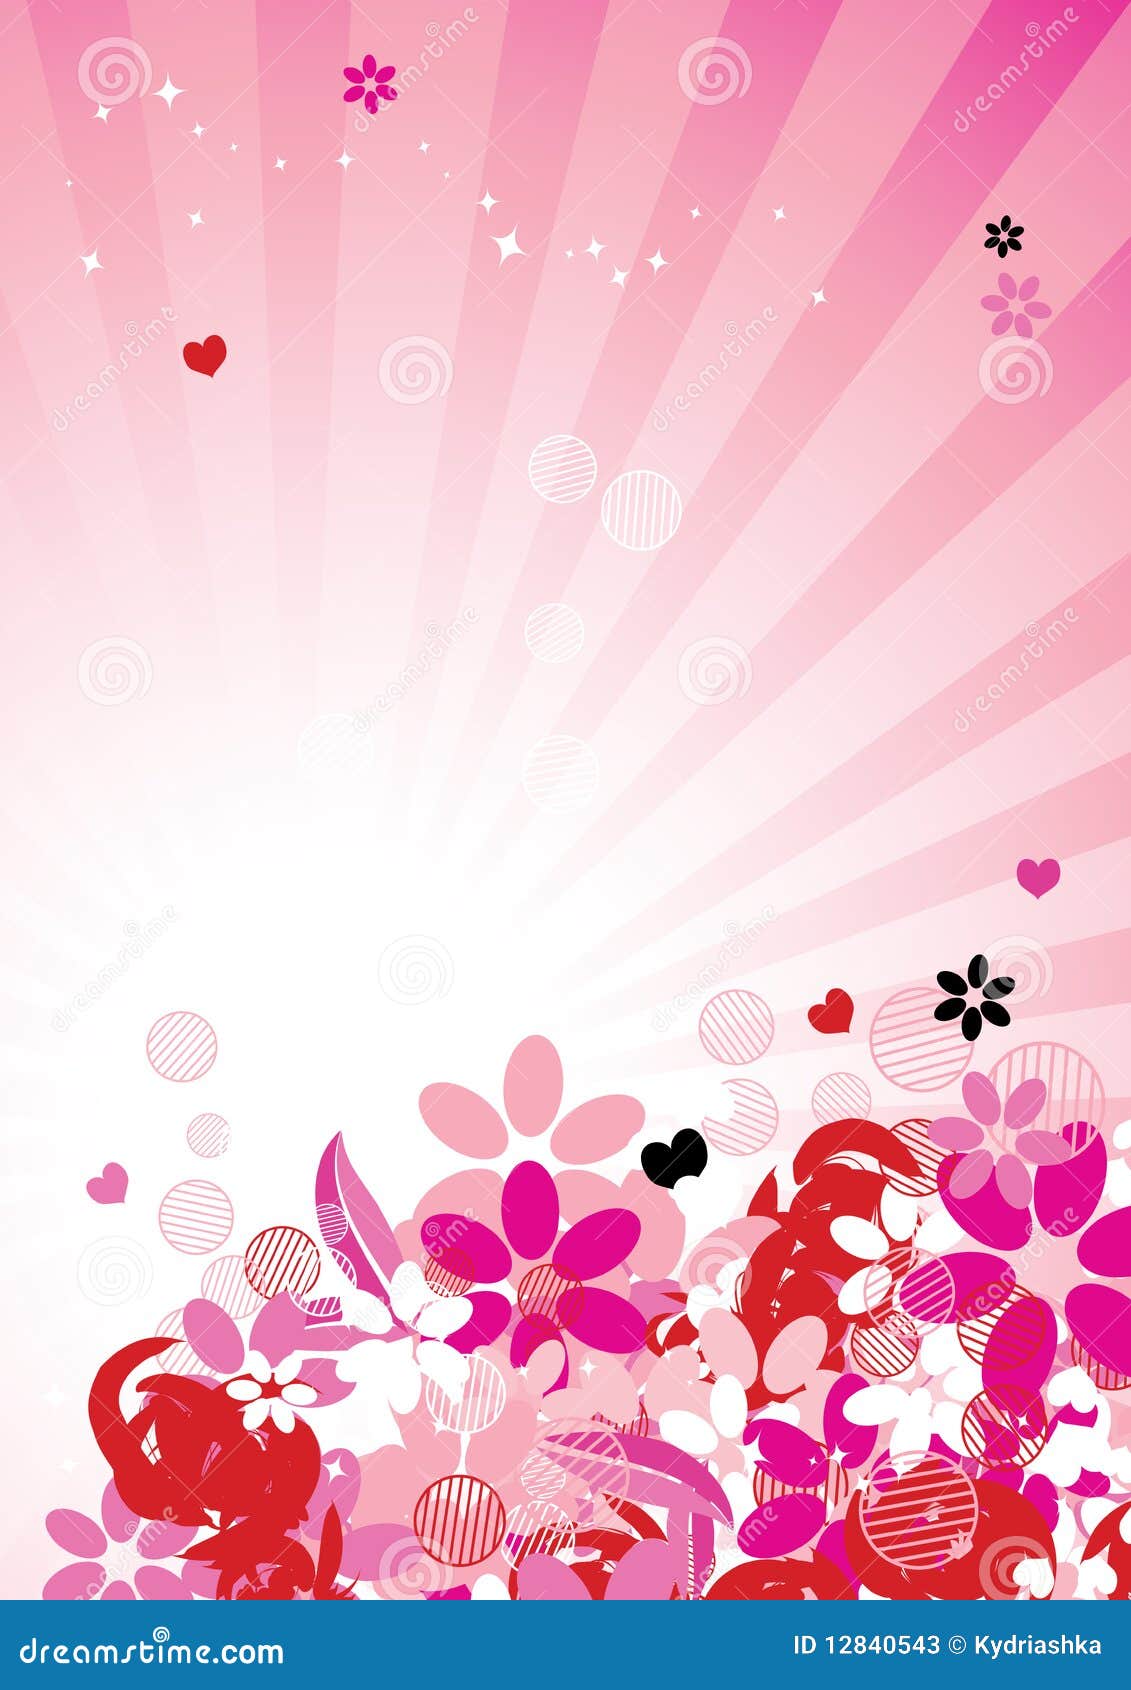 Với nền hoa hồng màu hồng tinh tế và đầy nữ tính, bạn sẽ có thể tạo ra những thiết kế thật xinh đẹp và đẳng cấp. Hãy sử dụng ngay để làm nổi bật sản phẩm của mình! (With delicate and feminine pink floral background, you can create beautiful and high-class designs. Use it now to make your product stand out!)